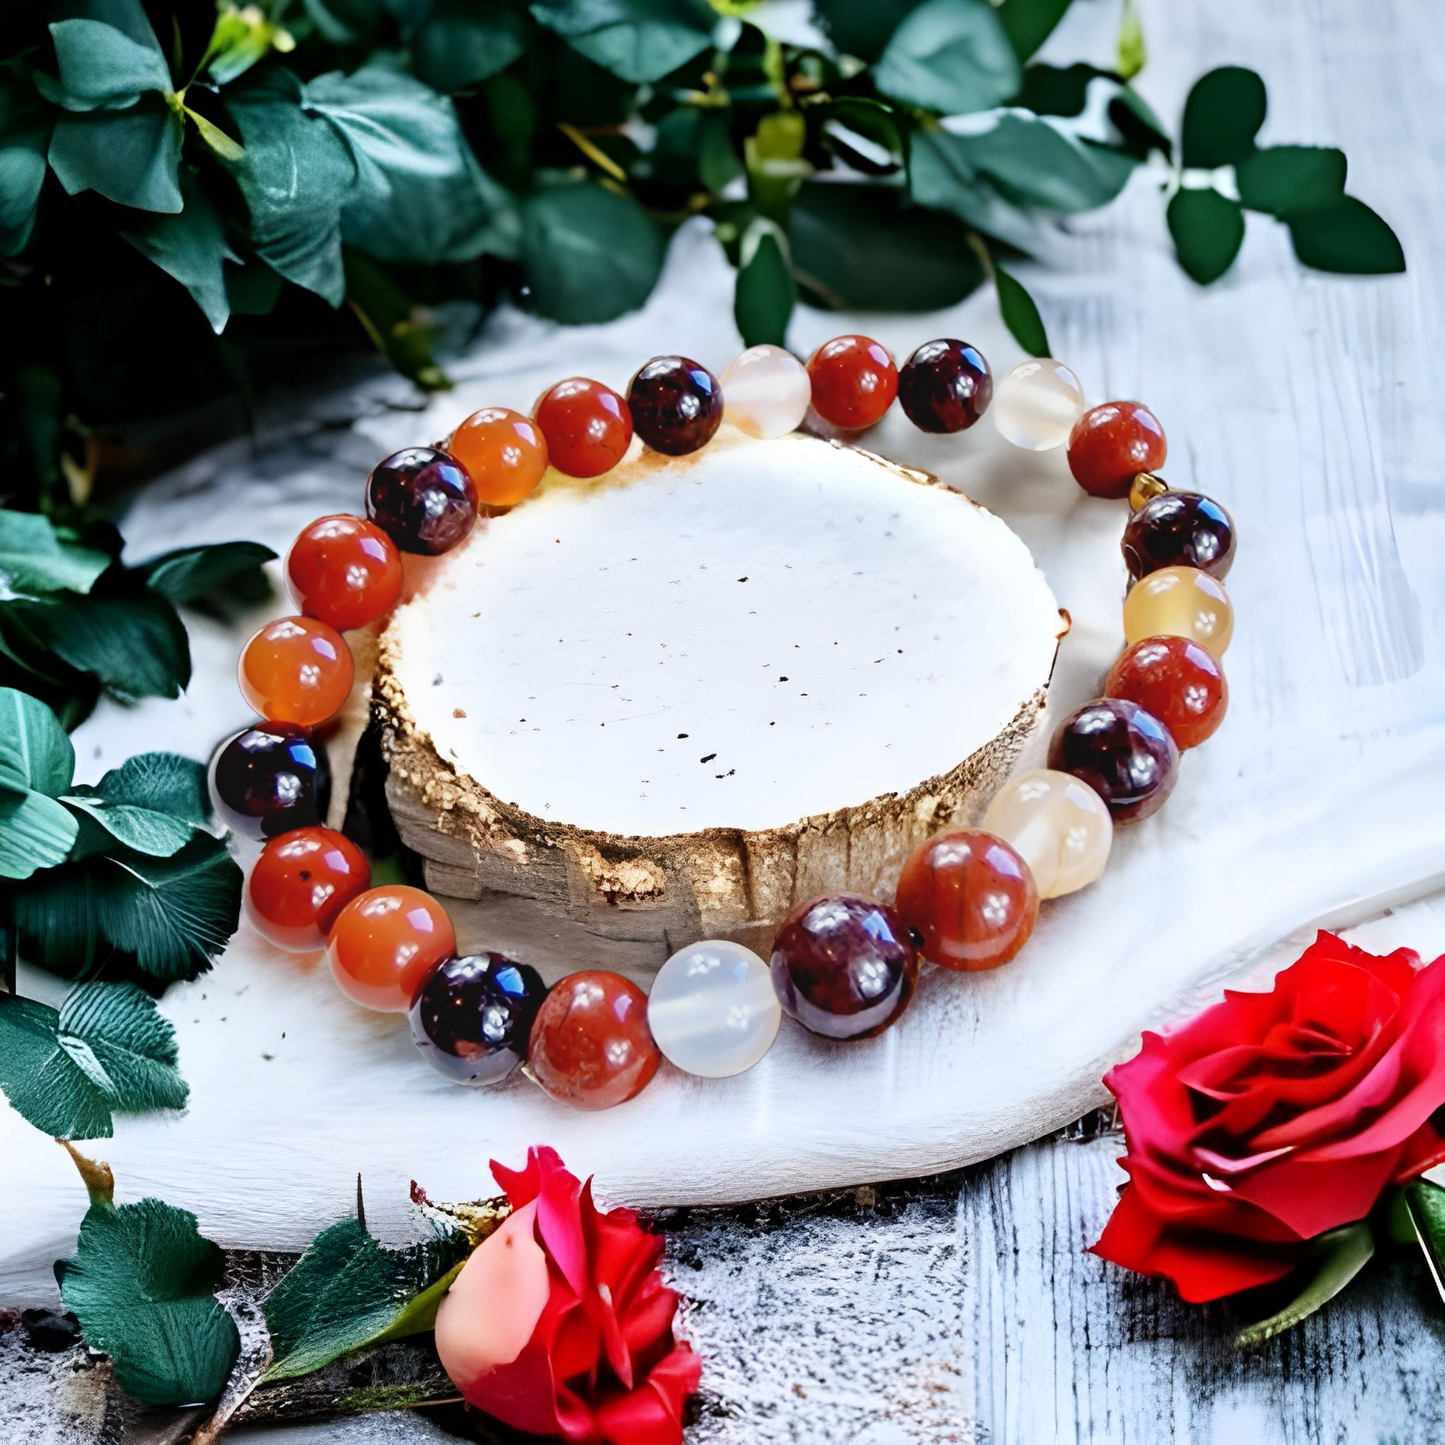 Coeur de perles, magasin de bracelets personnalisés en pierre semi-précieuses. Bracelets astrologiques, bien-être, chemin de vie